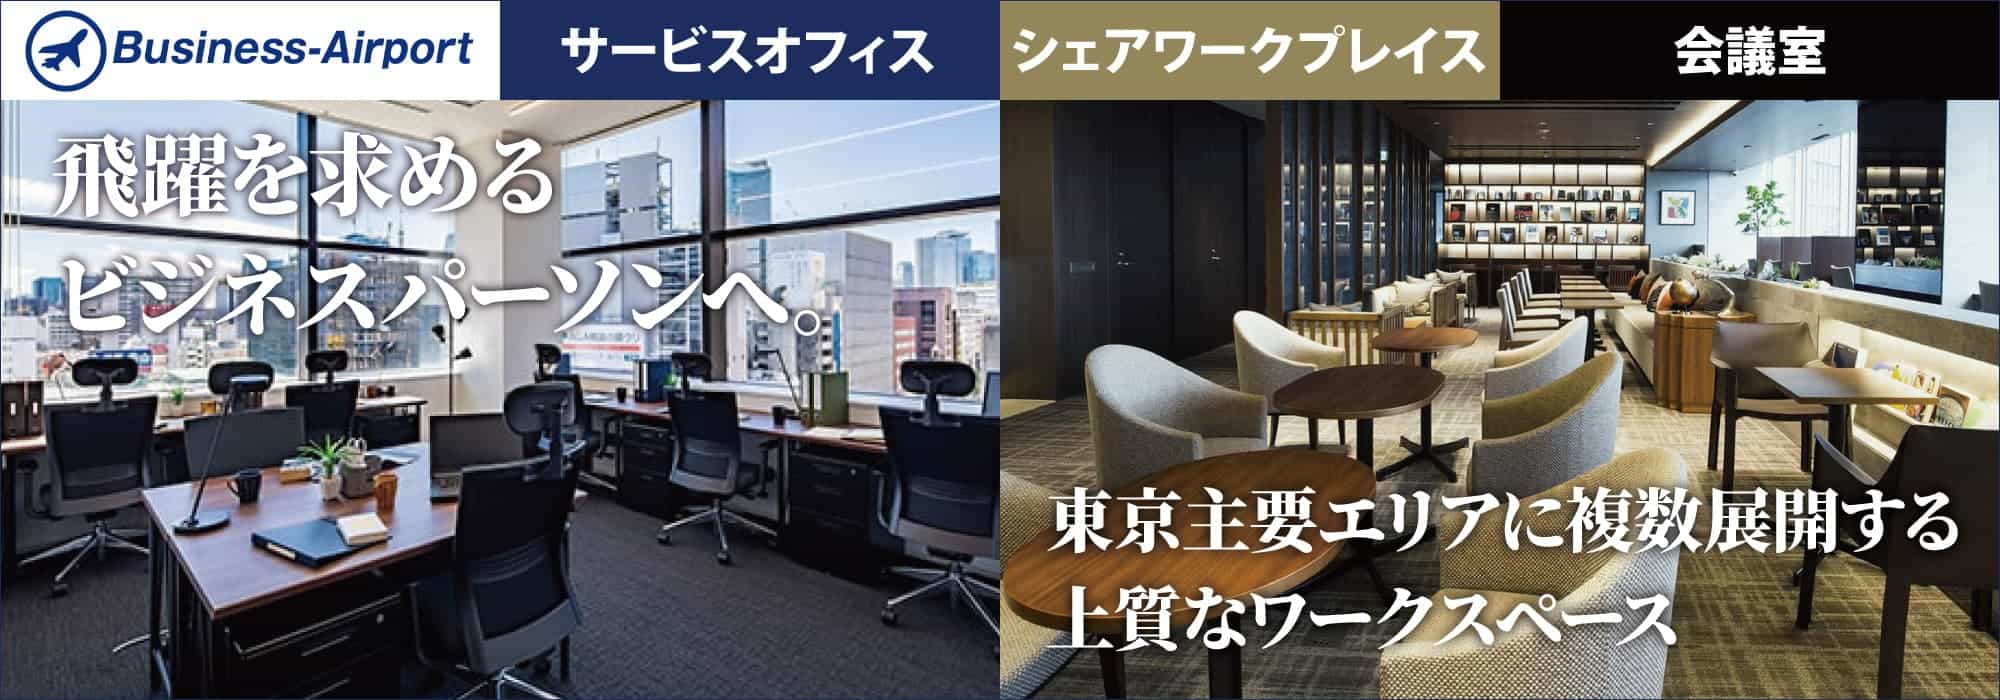 【ビジネスエアポート東京】「大手町」直結、皇居の緑を望む絶好のロケーション。東急不動産の上質なレンタルオフィス